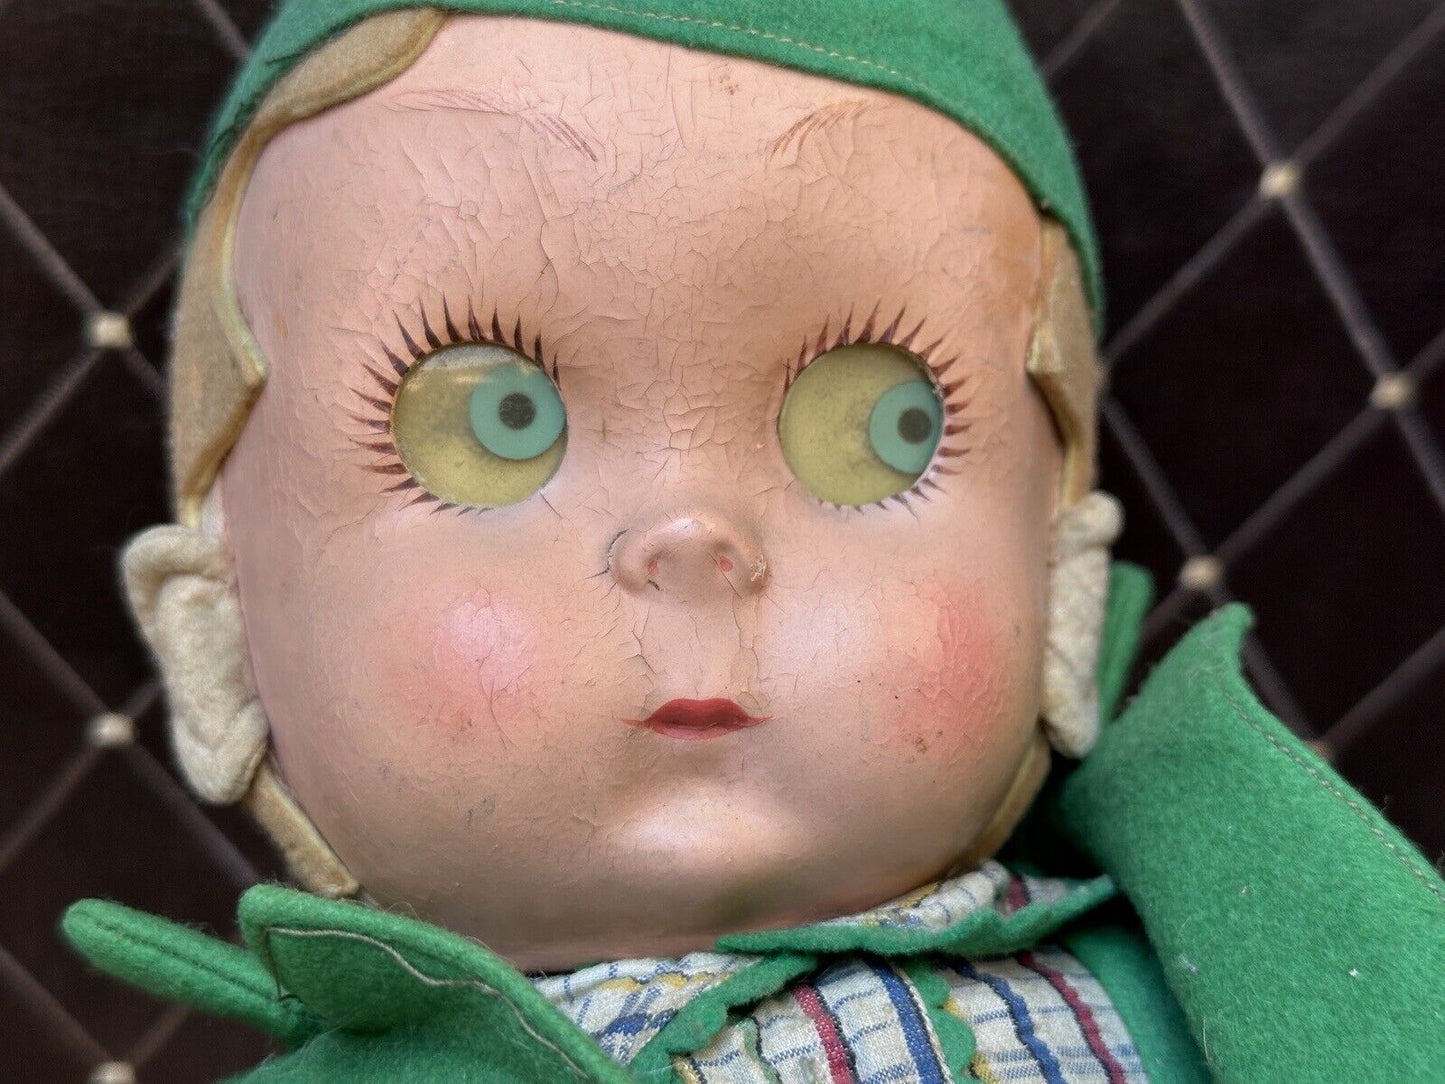 Vintage Italian 23” Lenci Didi (?) Felt Cloth Doll with Googly Disc Eyes